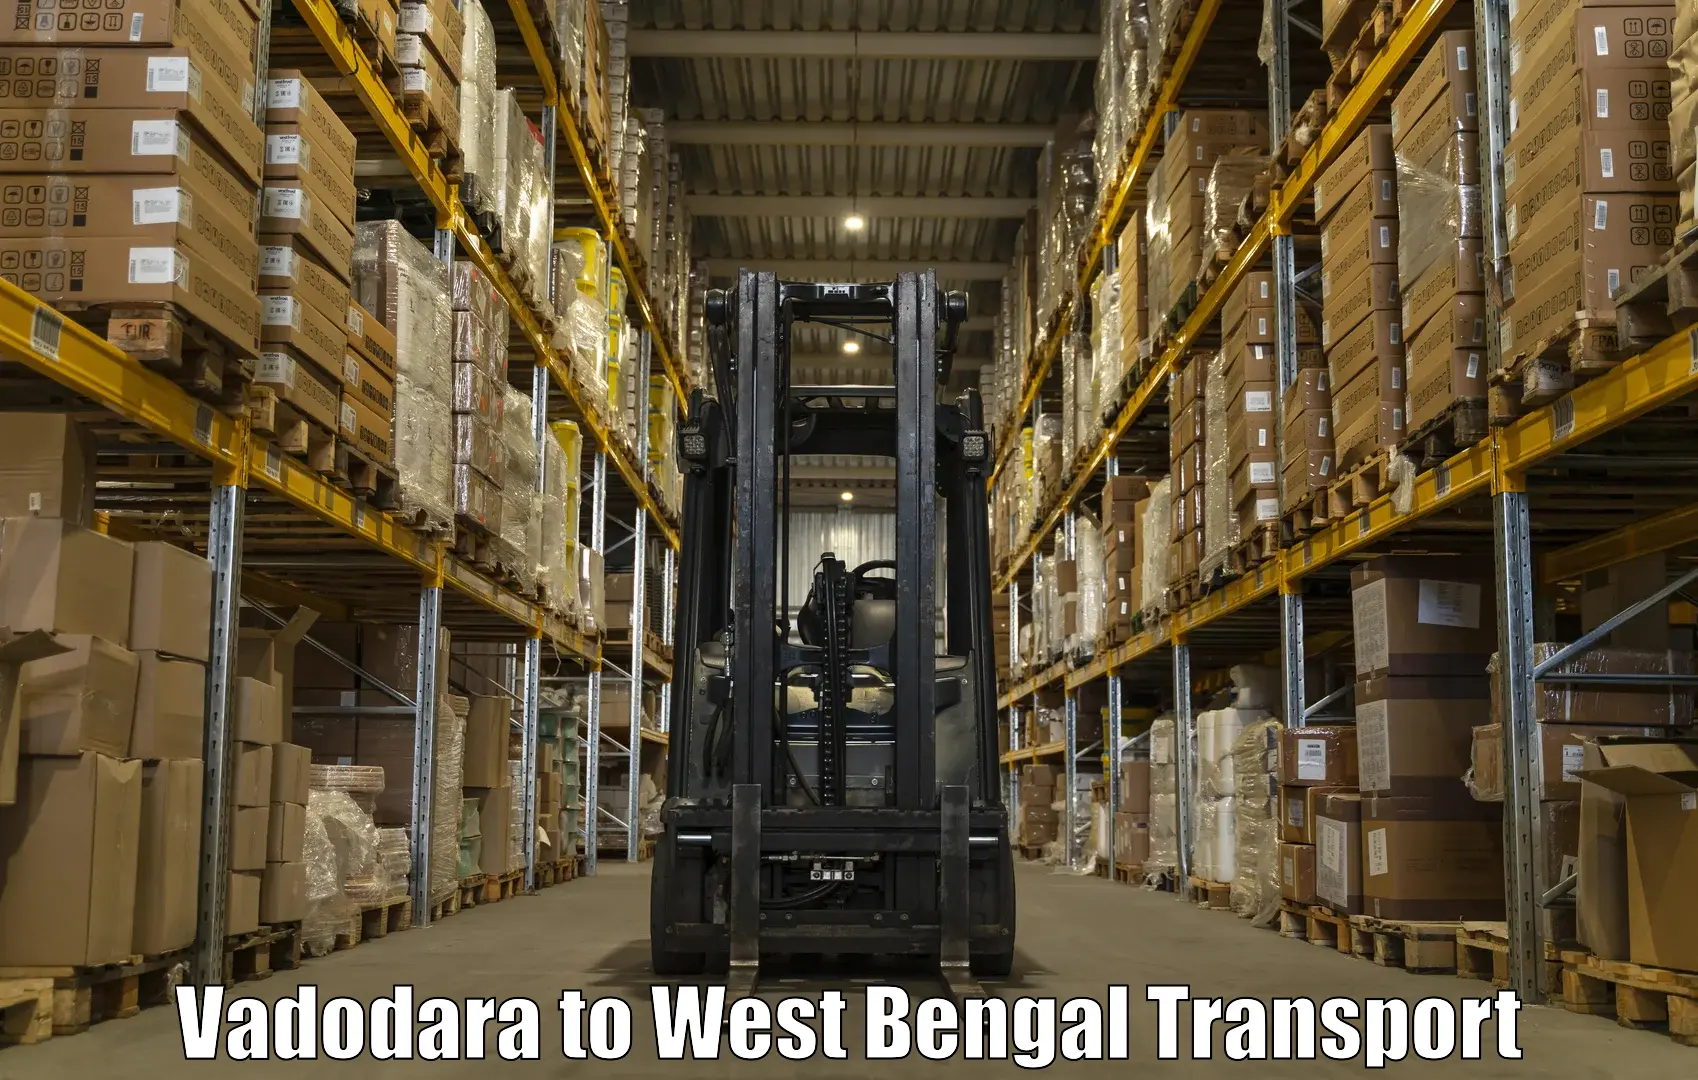 Truck transport companies in India in Vadodara to West Bengal